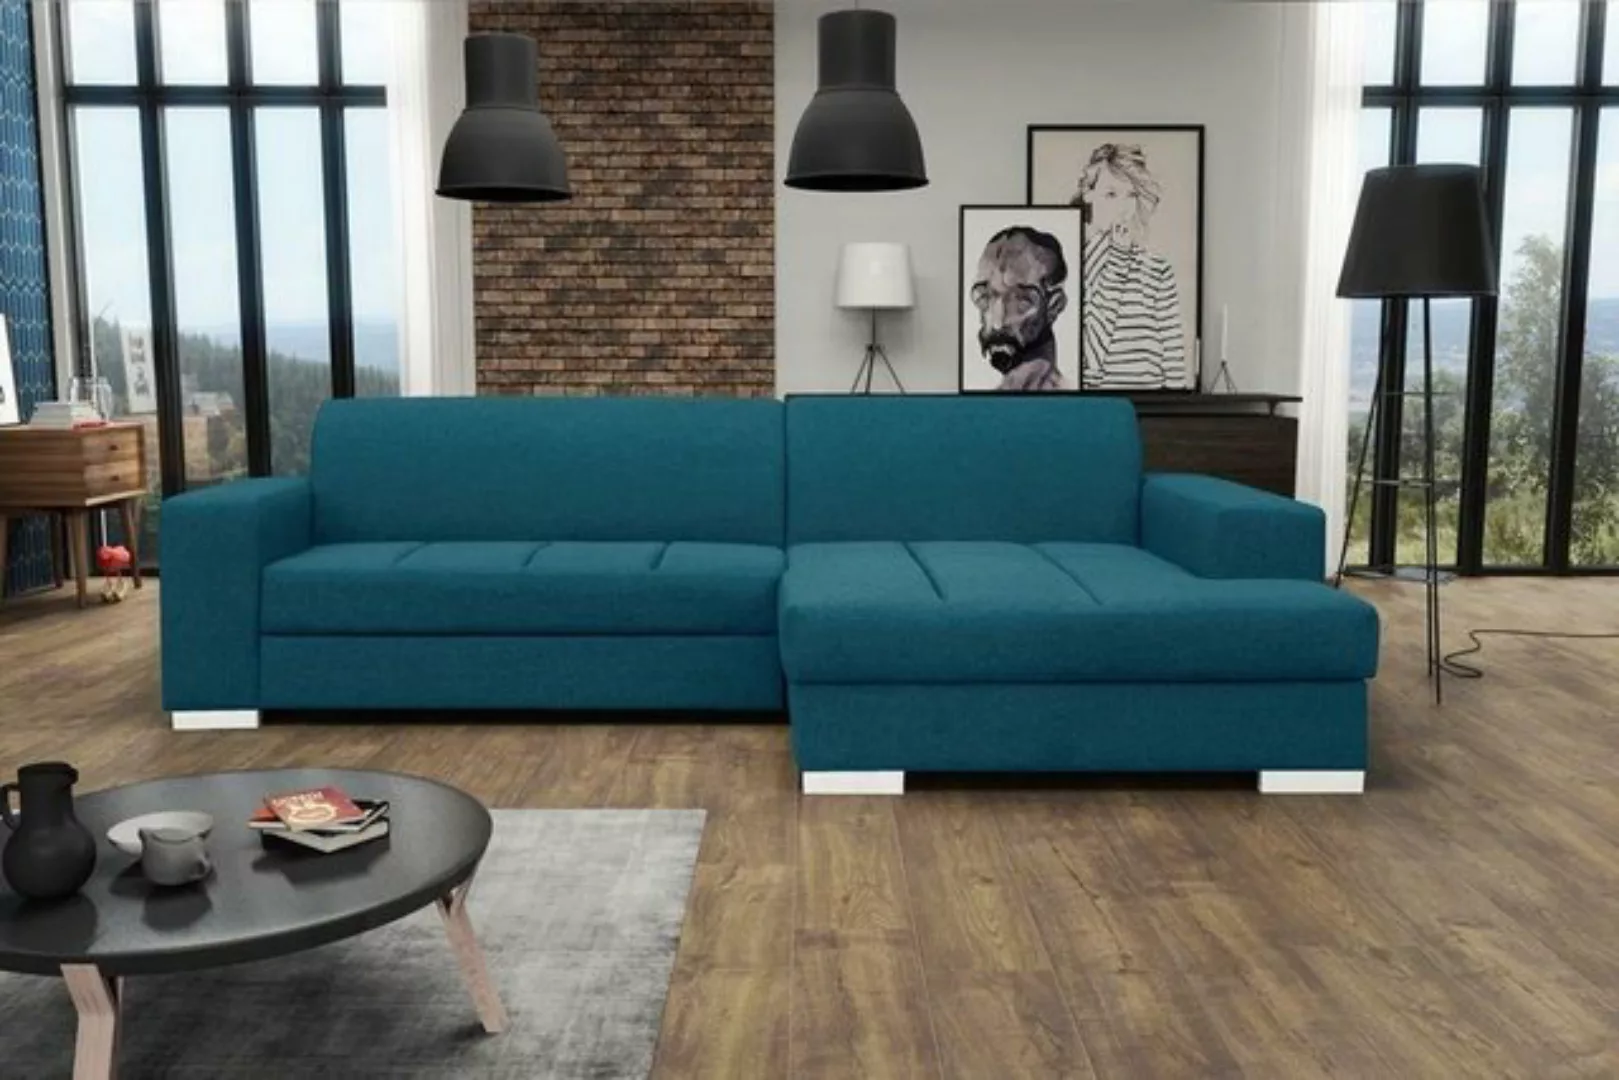 JVmoebel Ecksofa Ecksofa Sofa Couch Schlaf Polster Eck Garnitur Wohnlandsch günstig online kaufen